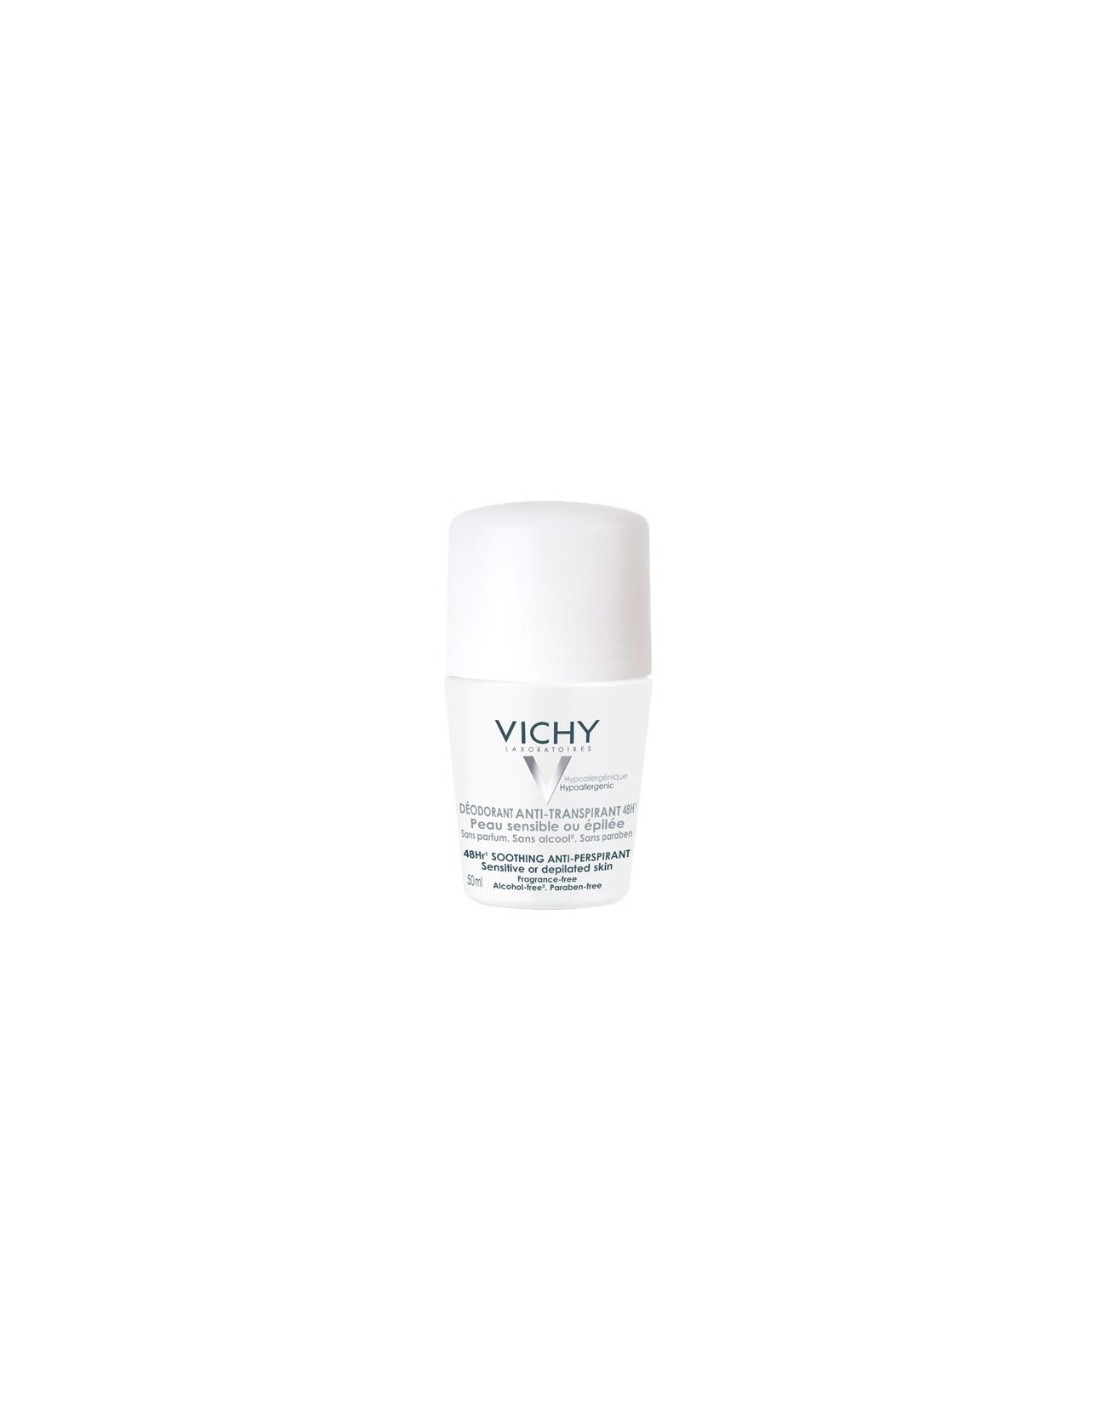 Vichy Desodorante Anti-transpirante Piel Sensible y Depilada 50ml